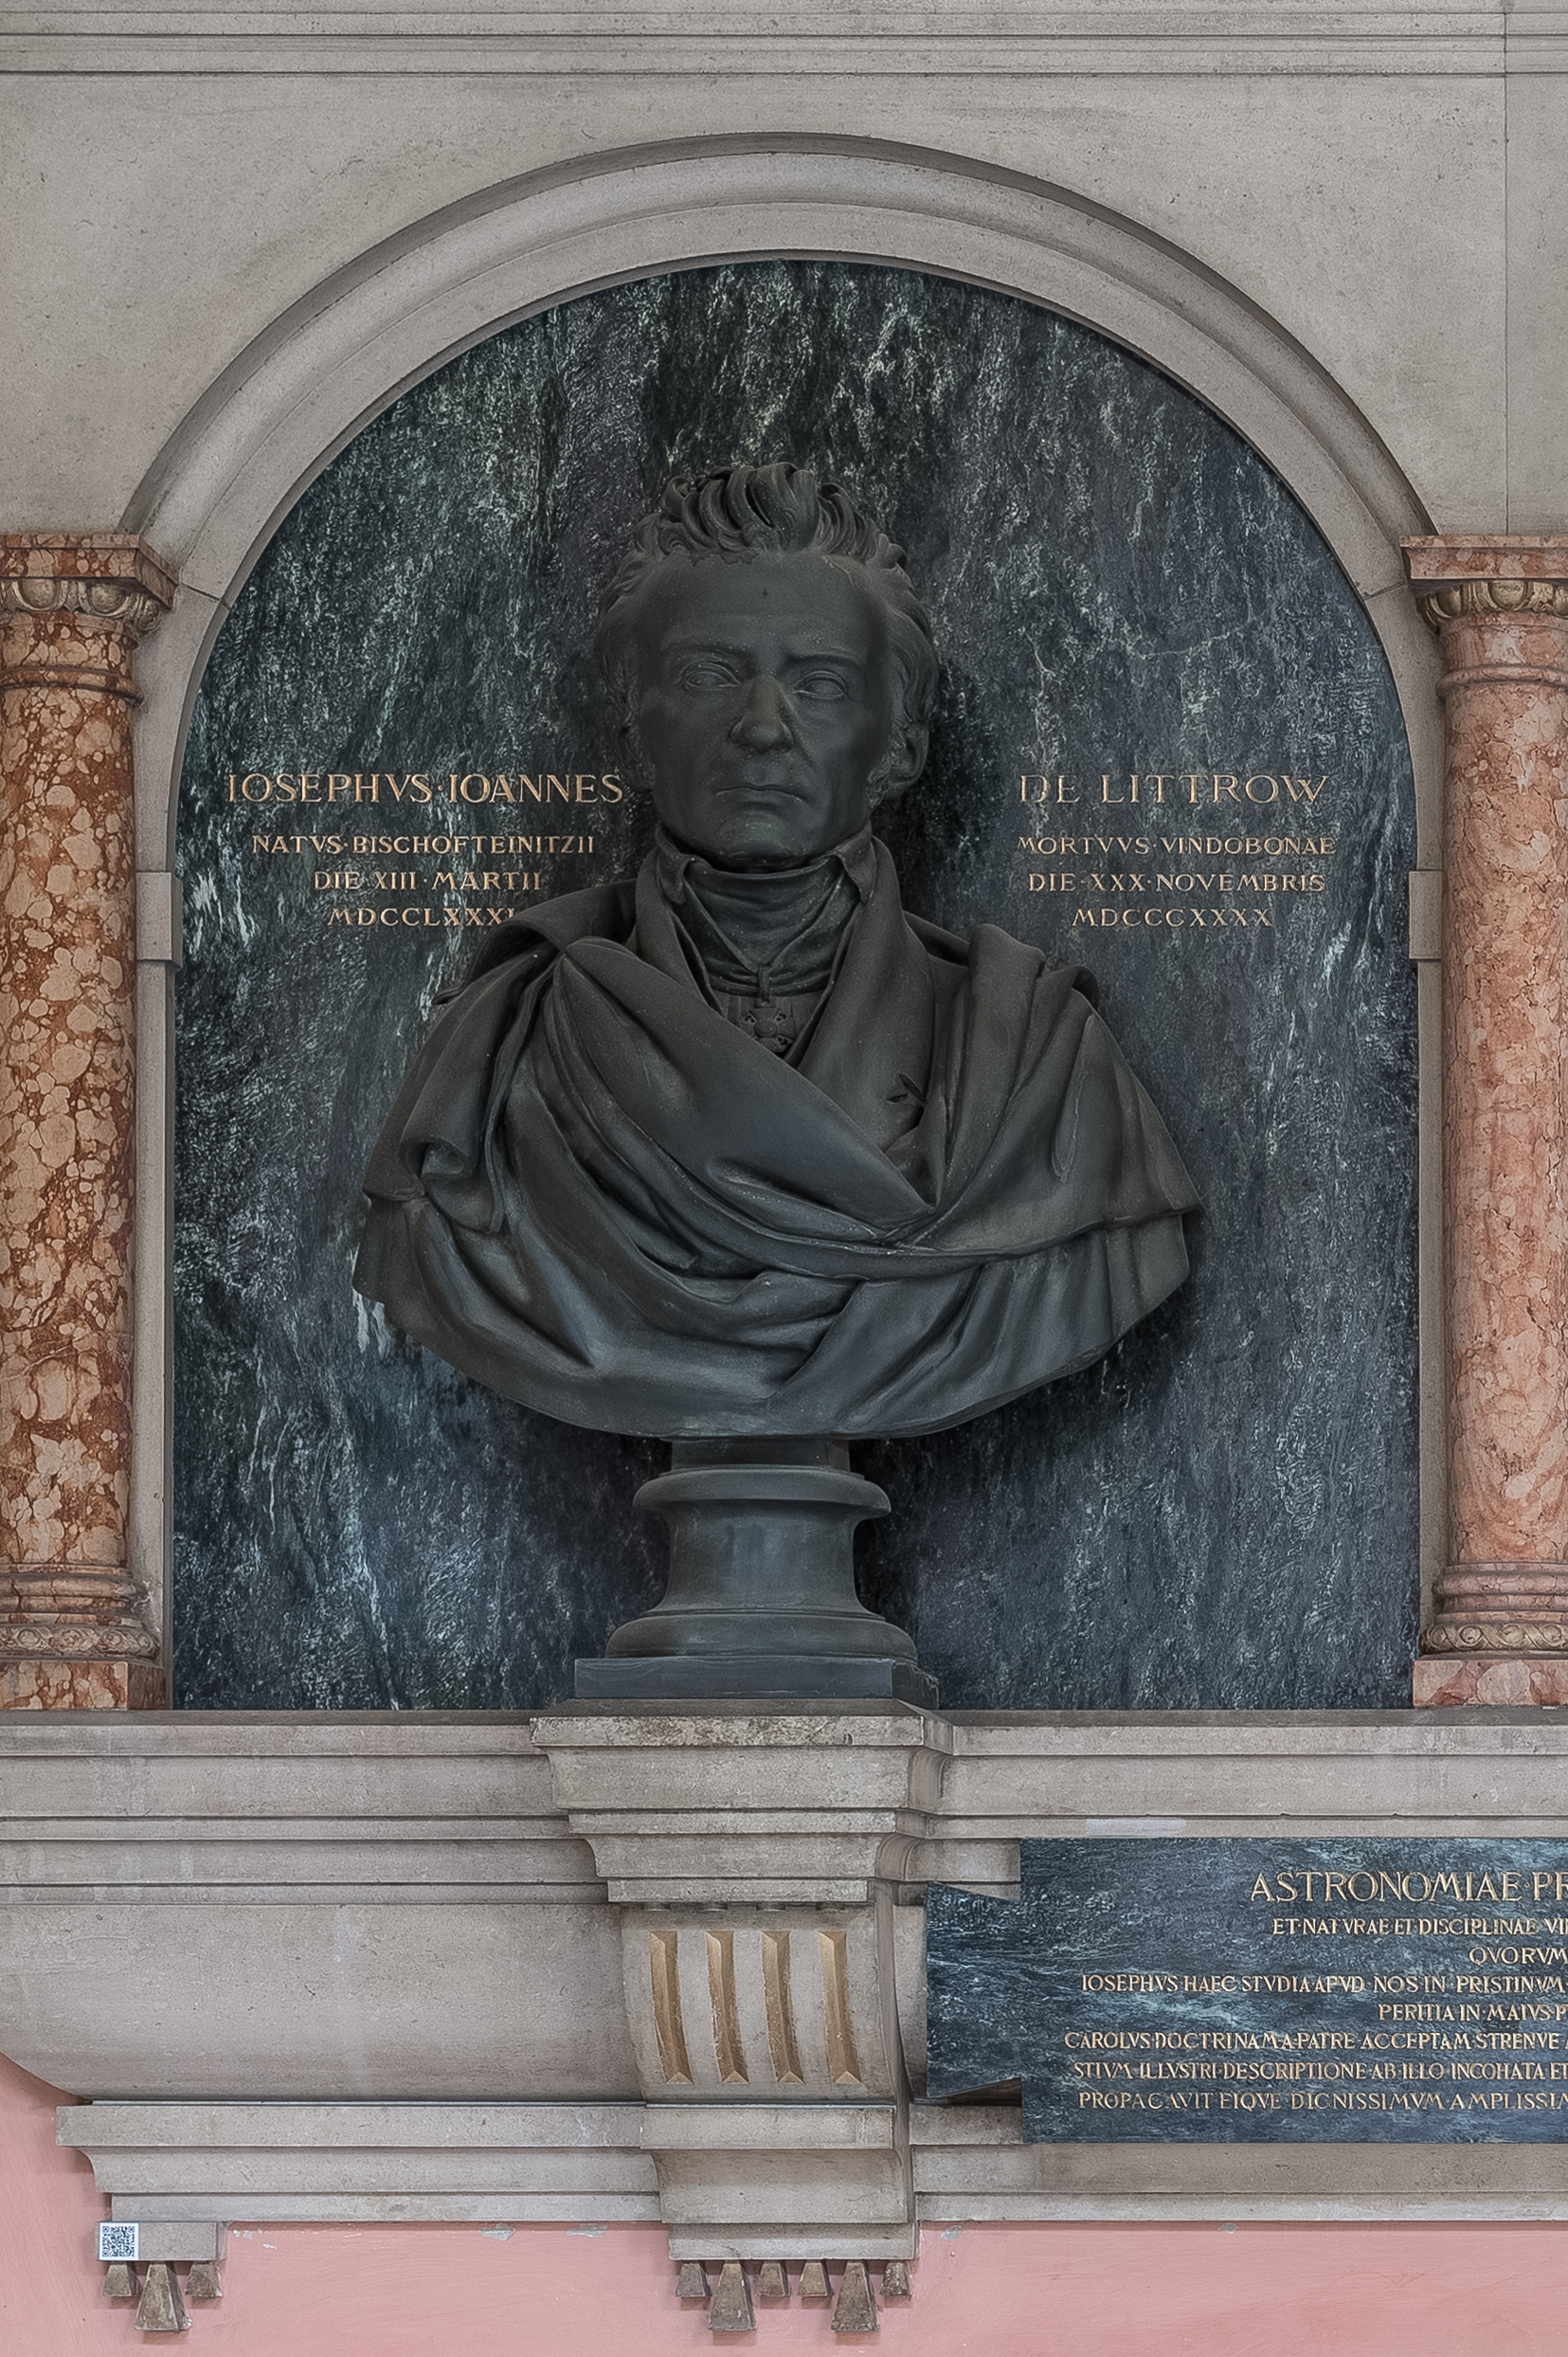 Karl von Littrow (1811-1877), Nr 96 bust (bronze) in the Arkadenhof of the University of Vienna-2379a-HDR